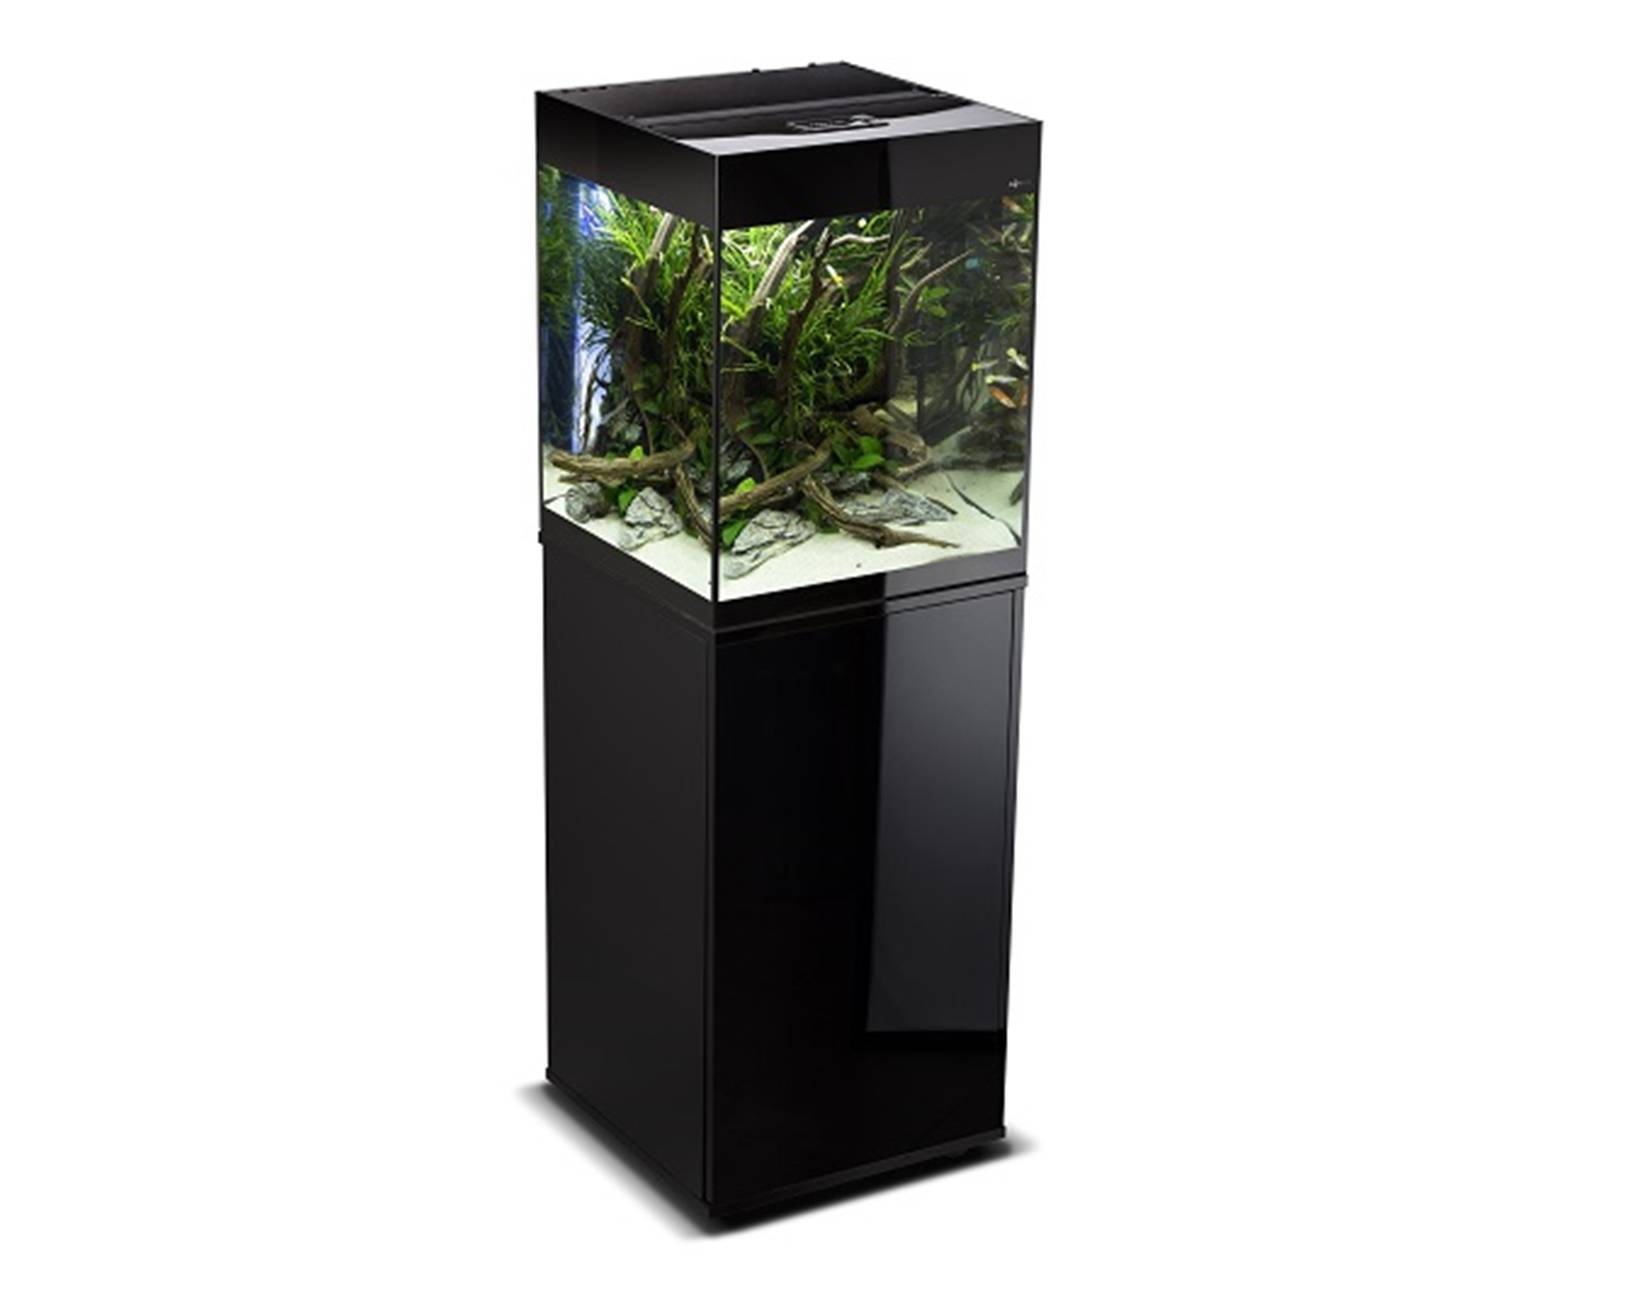 AquaEl (АкваЭль) Glossy Cube - Подставка-тумба под аквариум (50x50x90 см) в E-ZOO